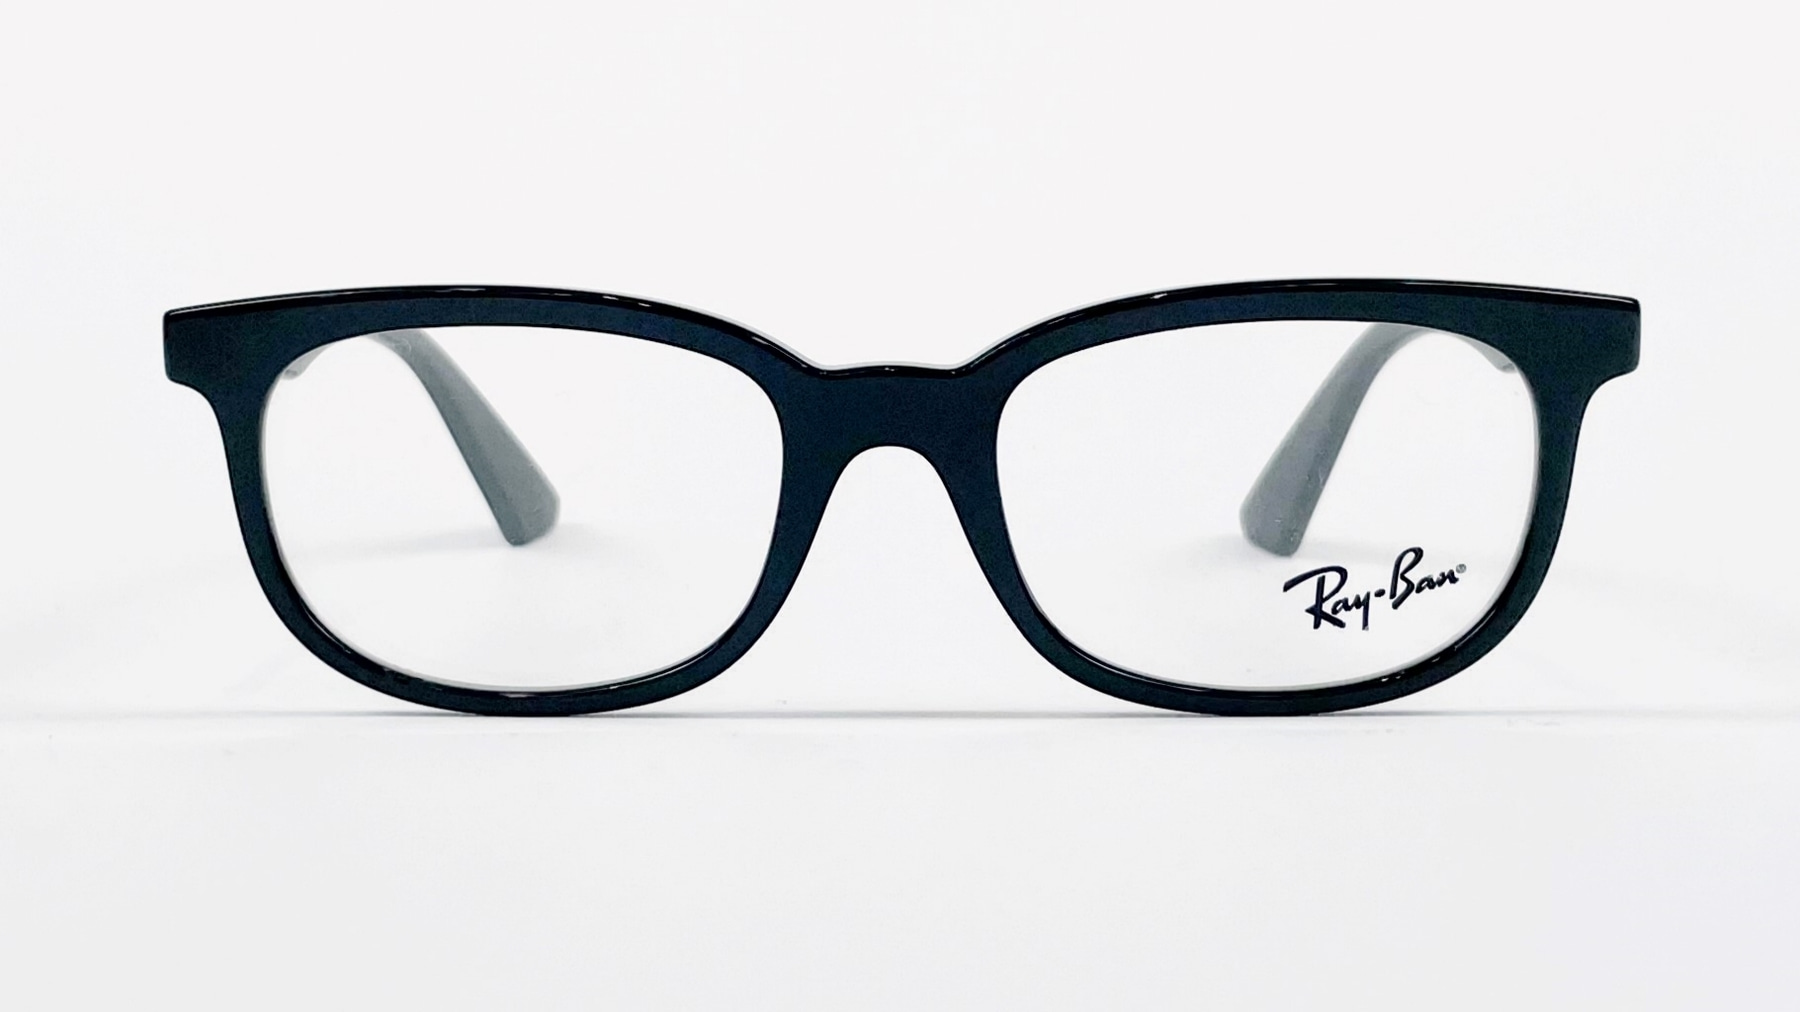 RayBan RB1584 3542, Korean glasses, sunglasses, eyeglasses, glasses